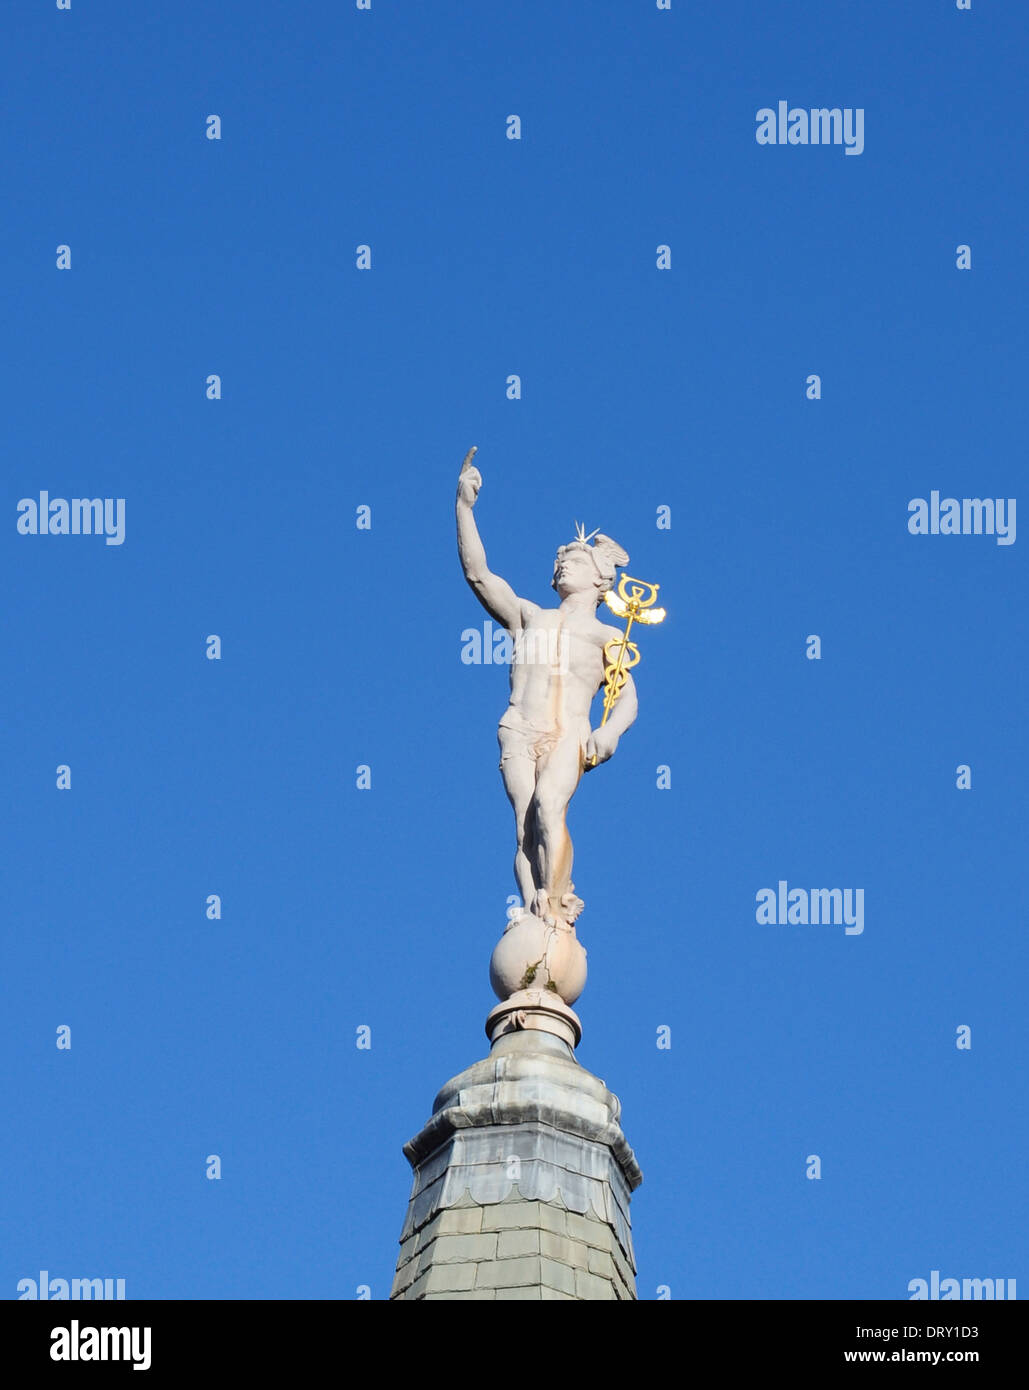 Statue du dieu romain Mercure, par Arthur Stanley Young, sur le toit de prêt Maison, Gray's Inn Road, London, England, UK Banque D'Images